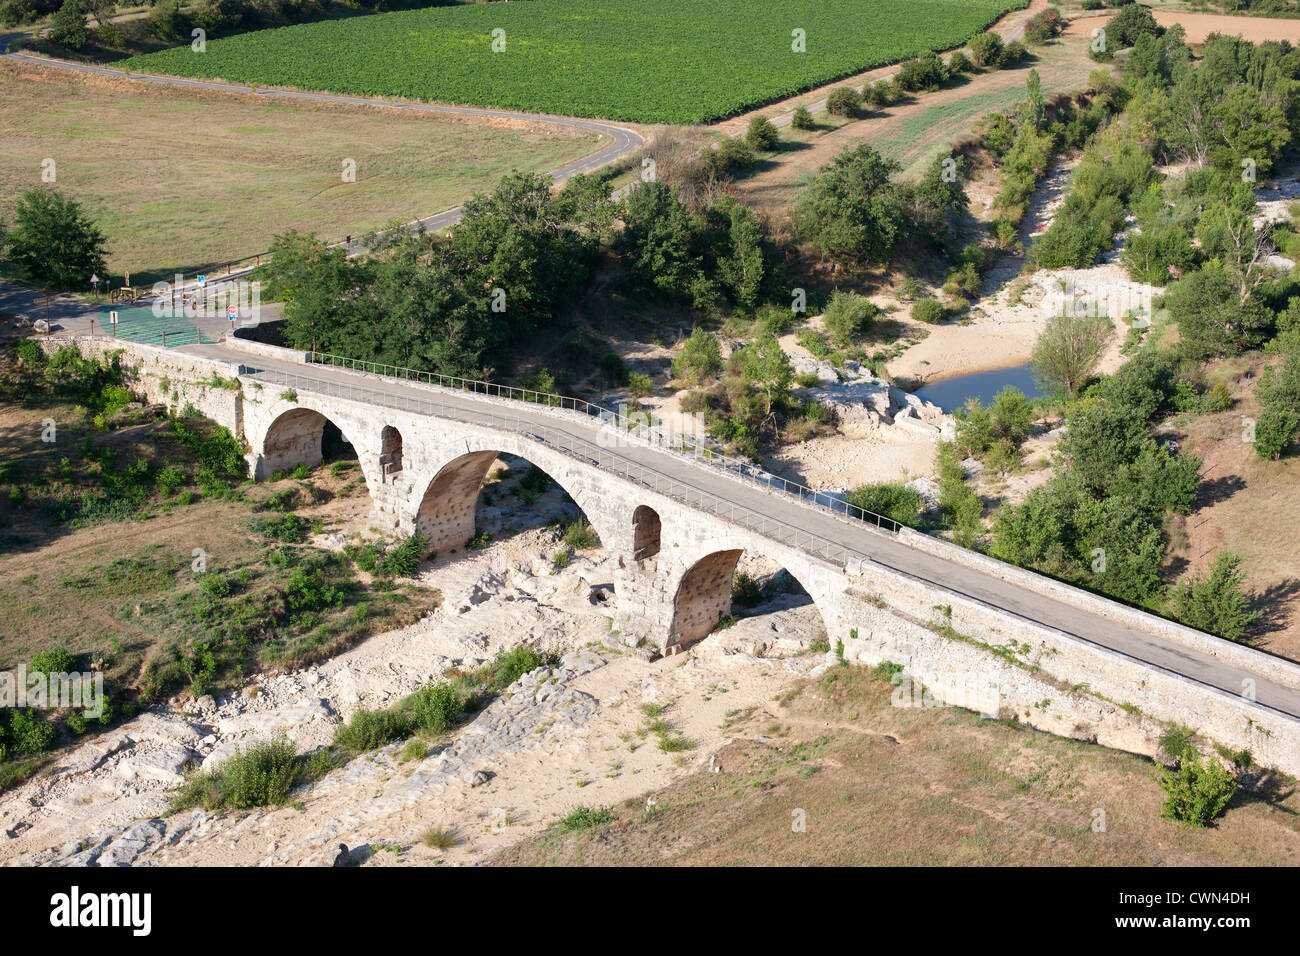 LUFTAUFNAHME. Pont Julien ist eine 2000 Jahre alte römische Steinbogenbrücke an der Via Domitia. Apt, Provence, Frankreich. Stockfoto